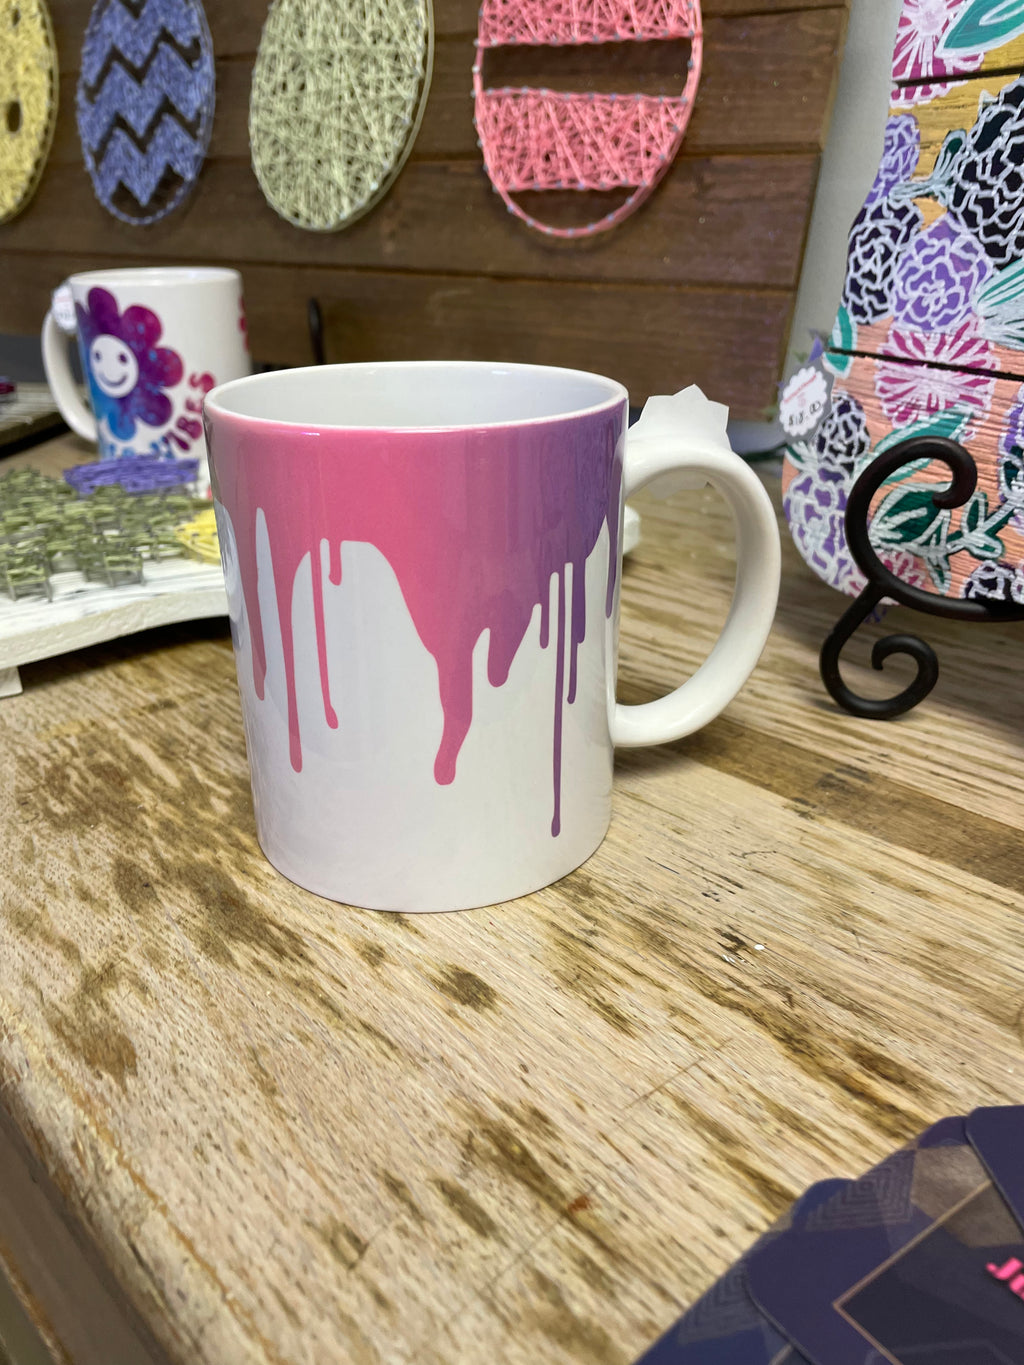 Paint Drip Mug